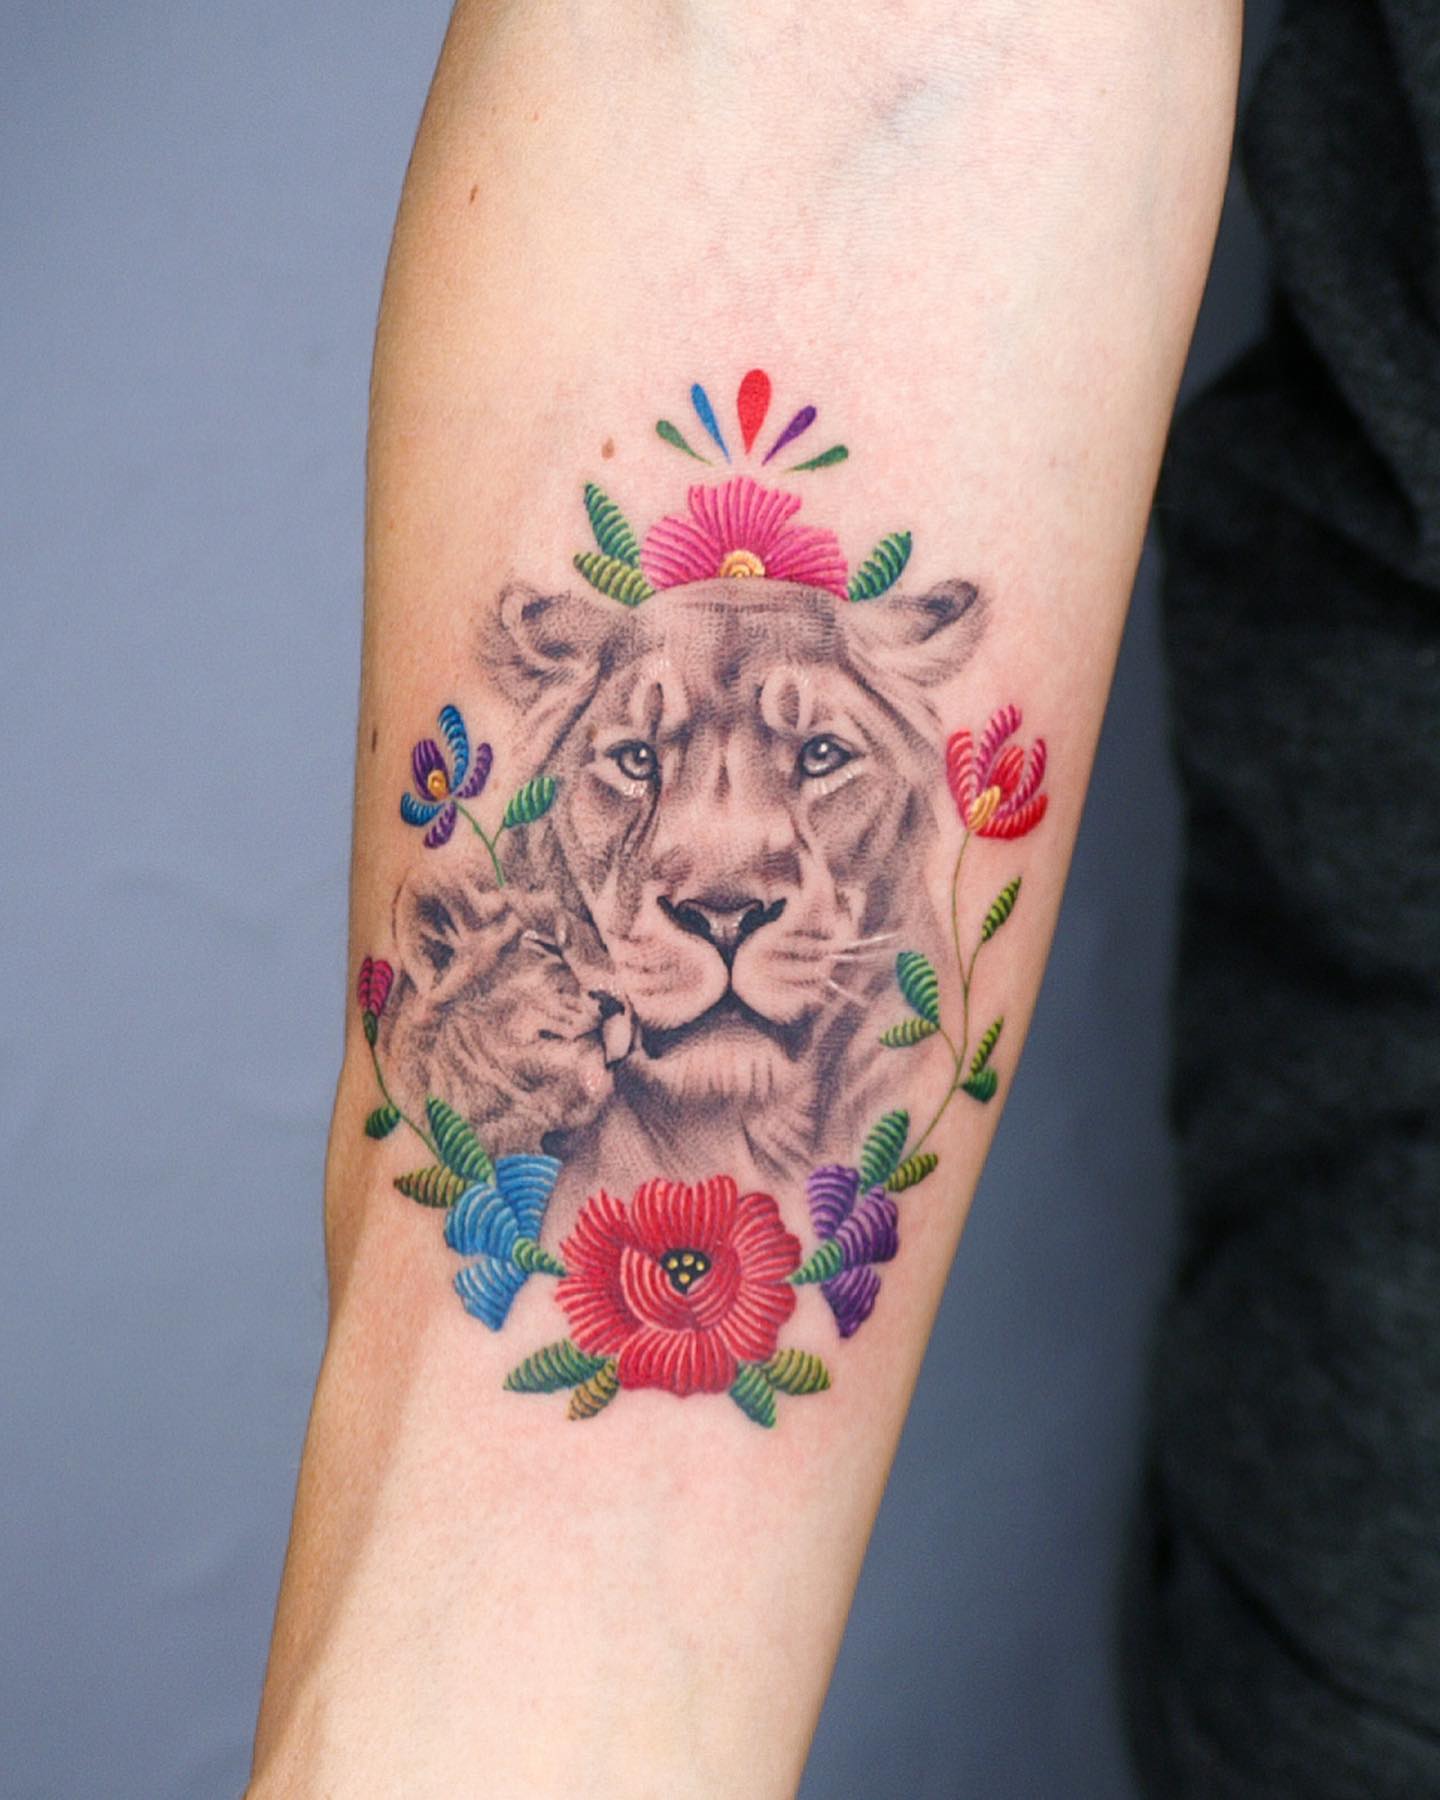 Реалистичная татуировка льва в сочетании с цветочными стежками